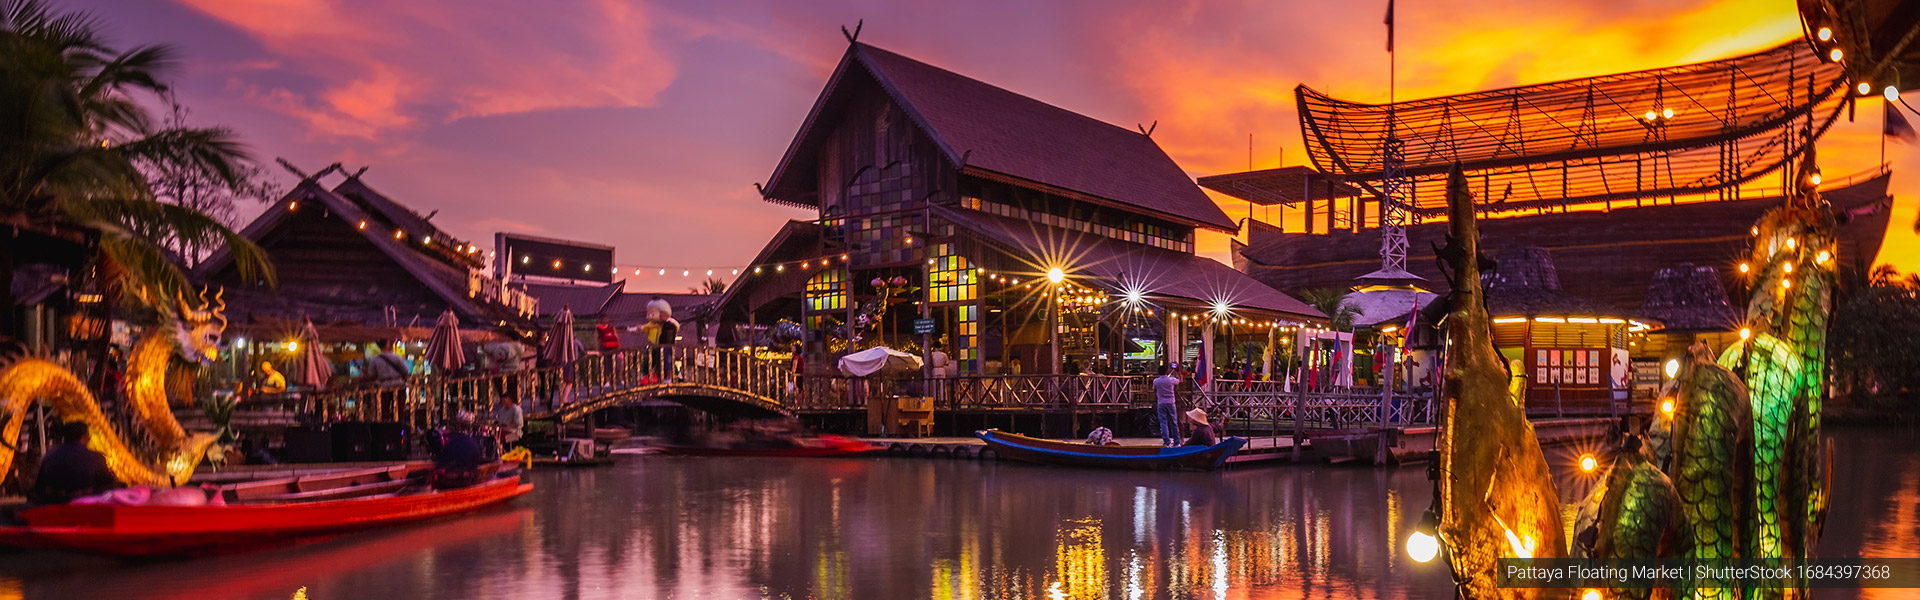 Visit Amazing Thailand Bangkok and Pattaya on regular tour